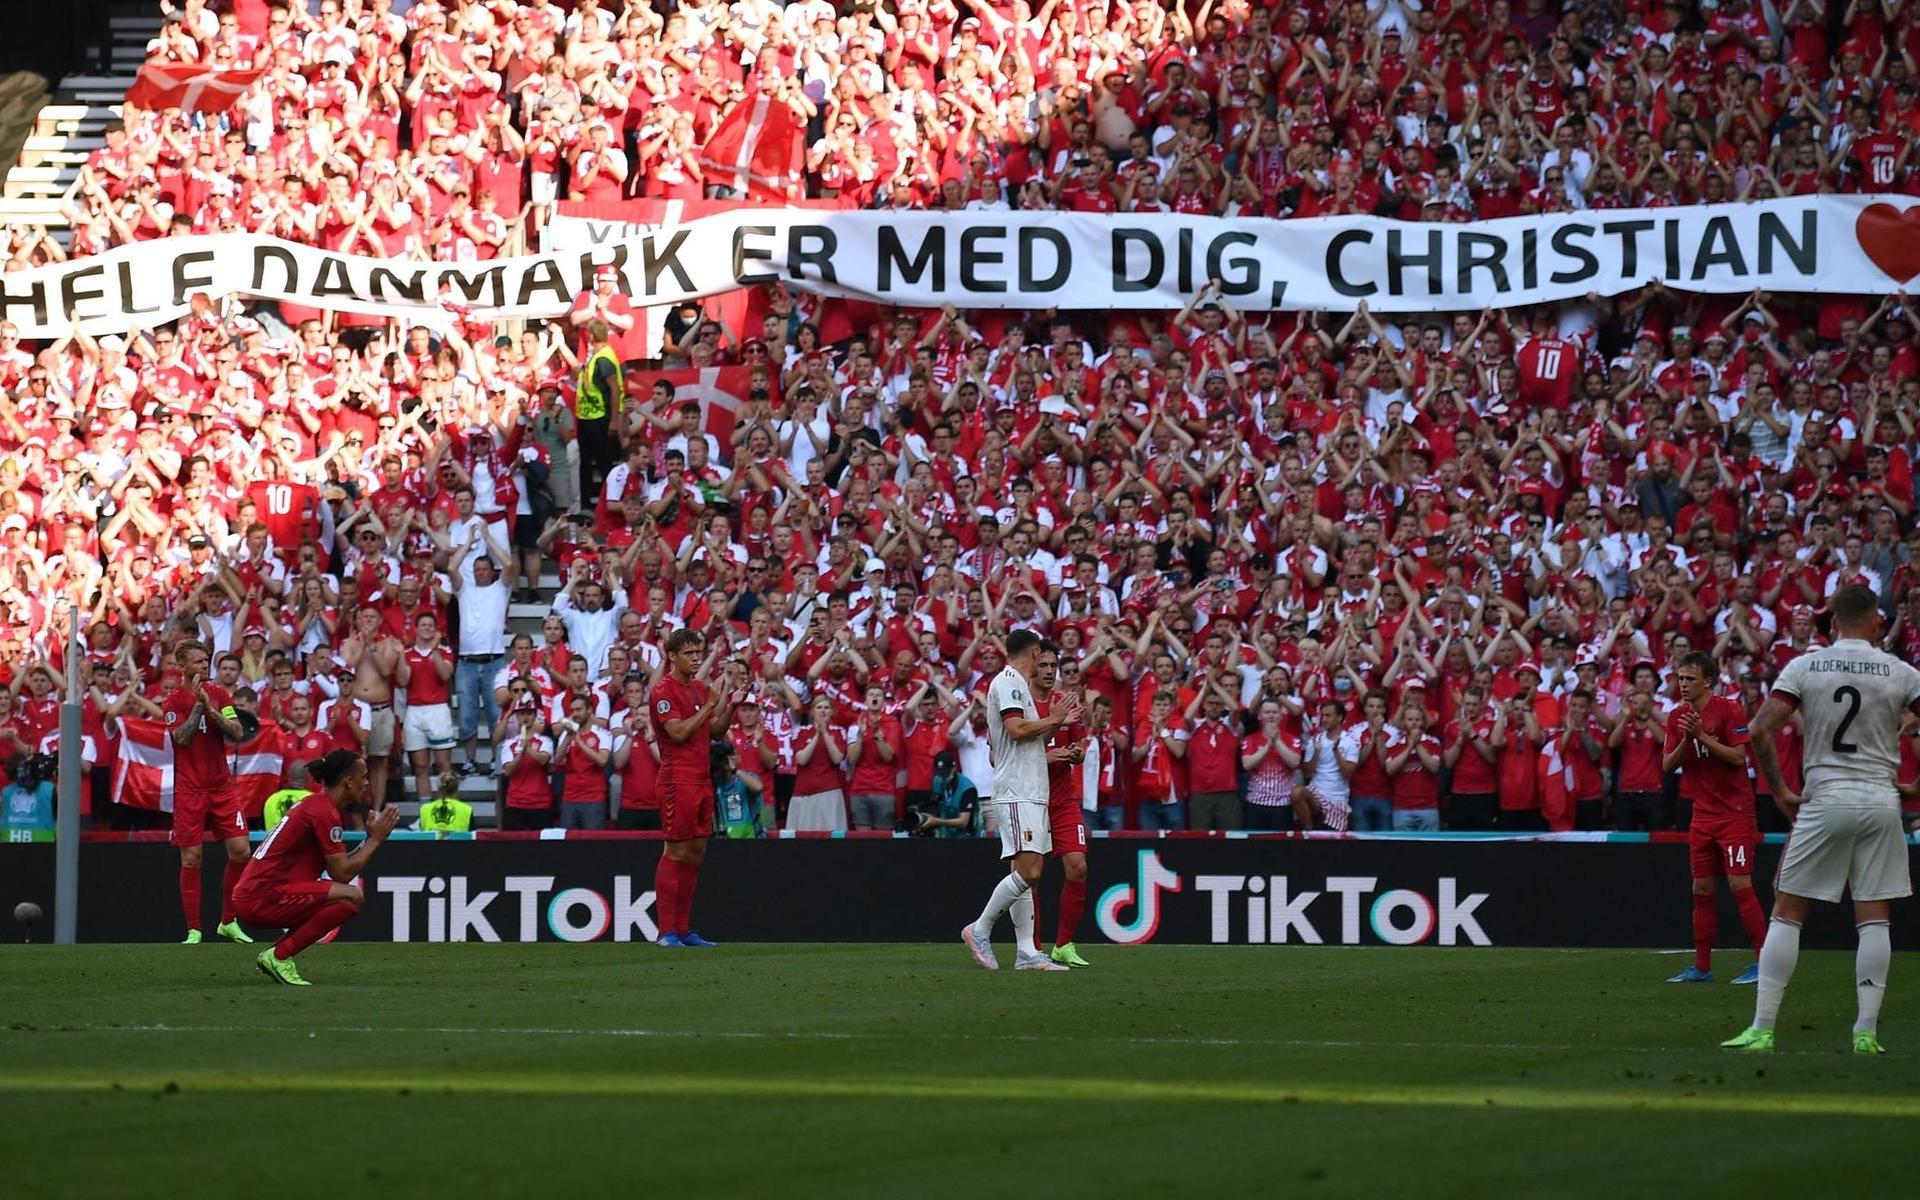 &quot;Hela Danmark är med dig, Christian” stod det på den banderoll som togs fram i matchminut tio. 